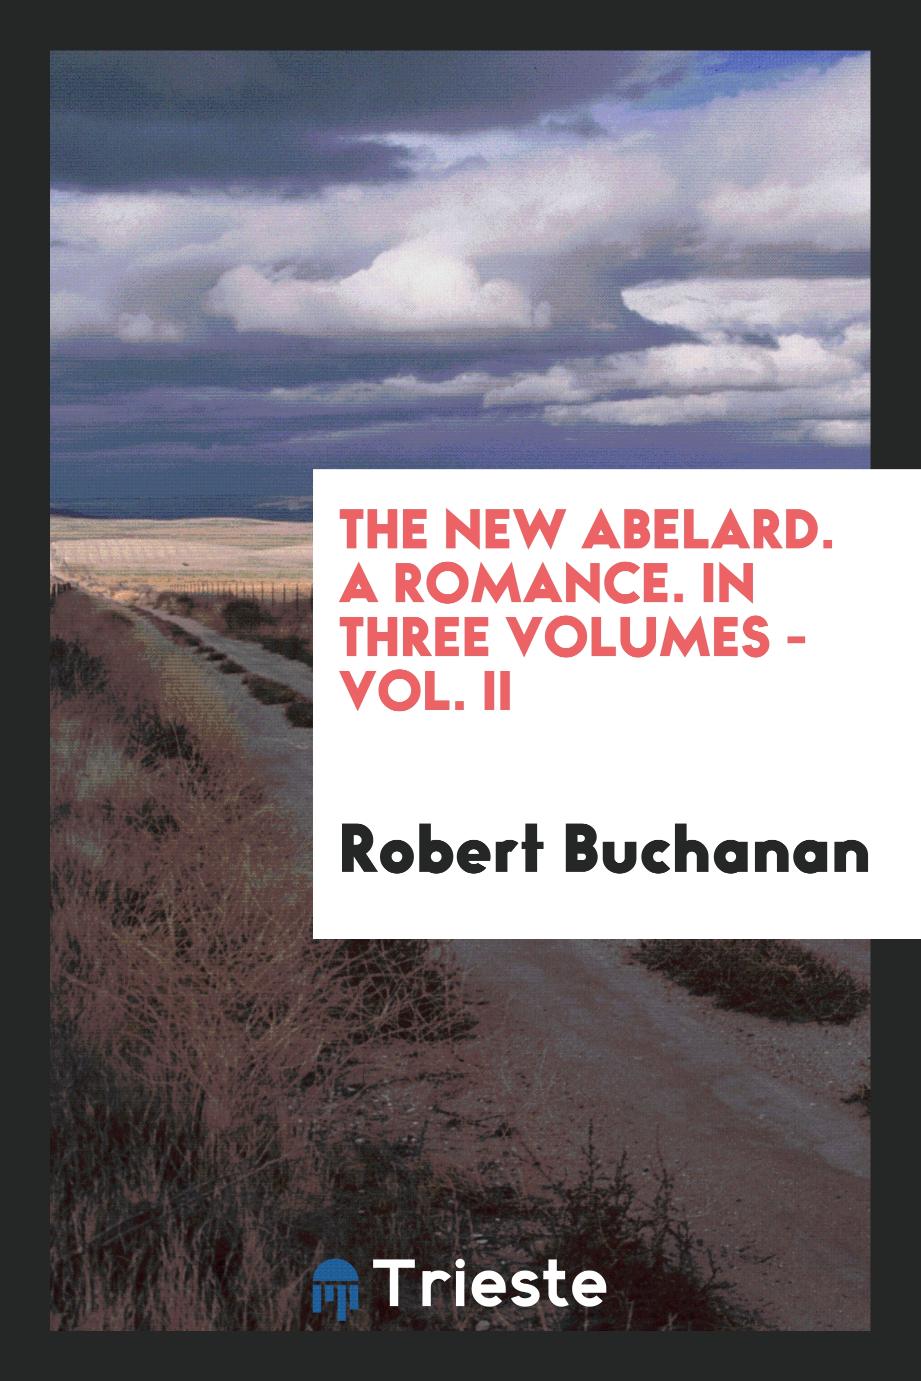 The new Abelard. A Romance. In Three Volumes - Vol. II